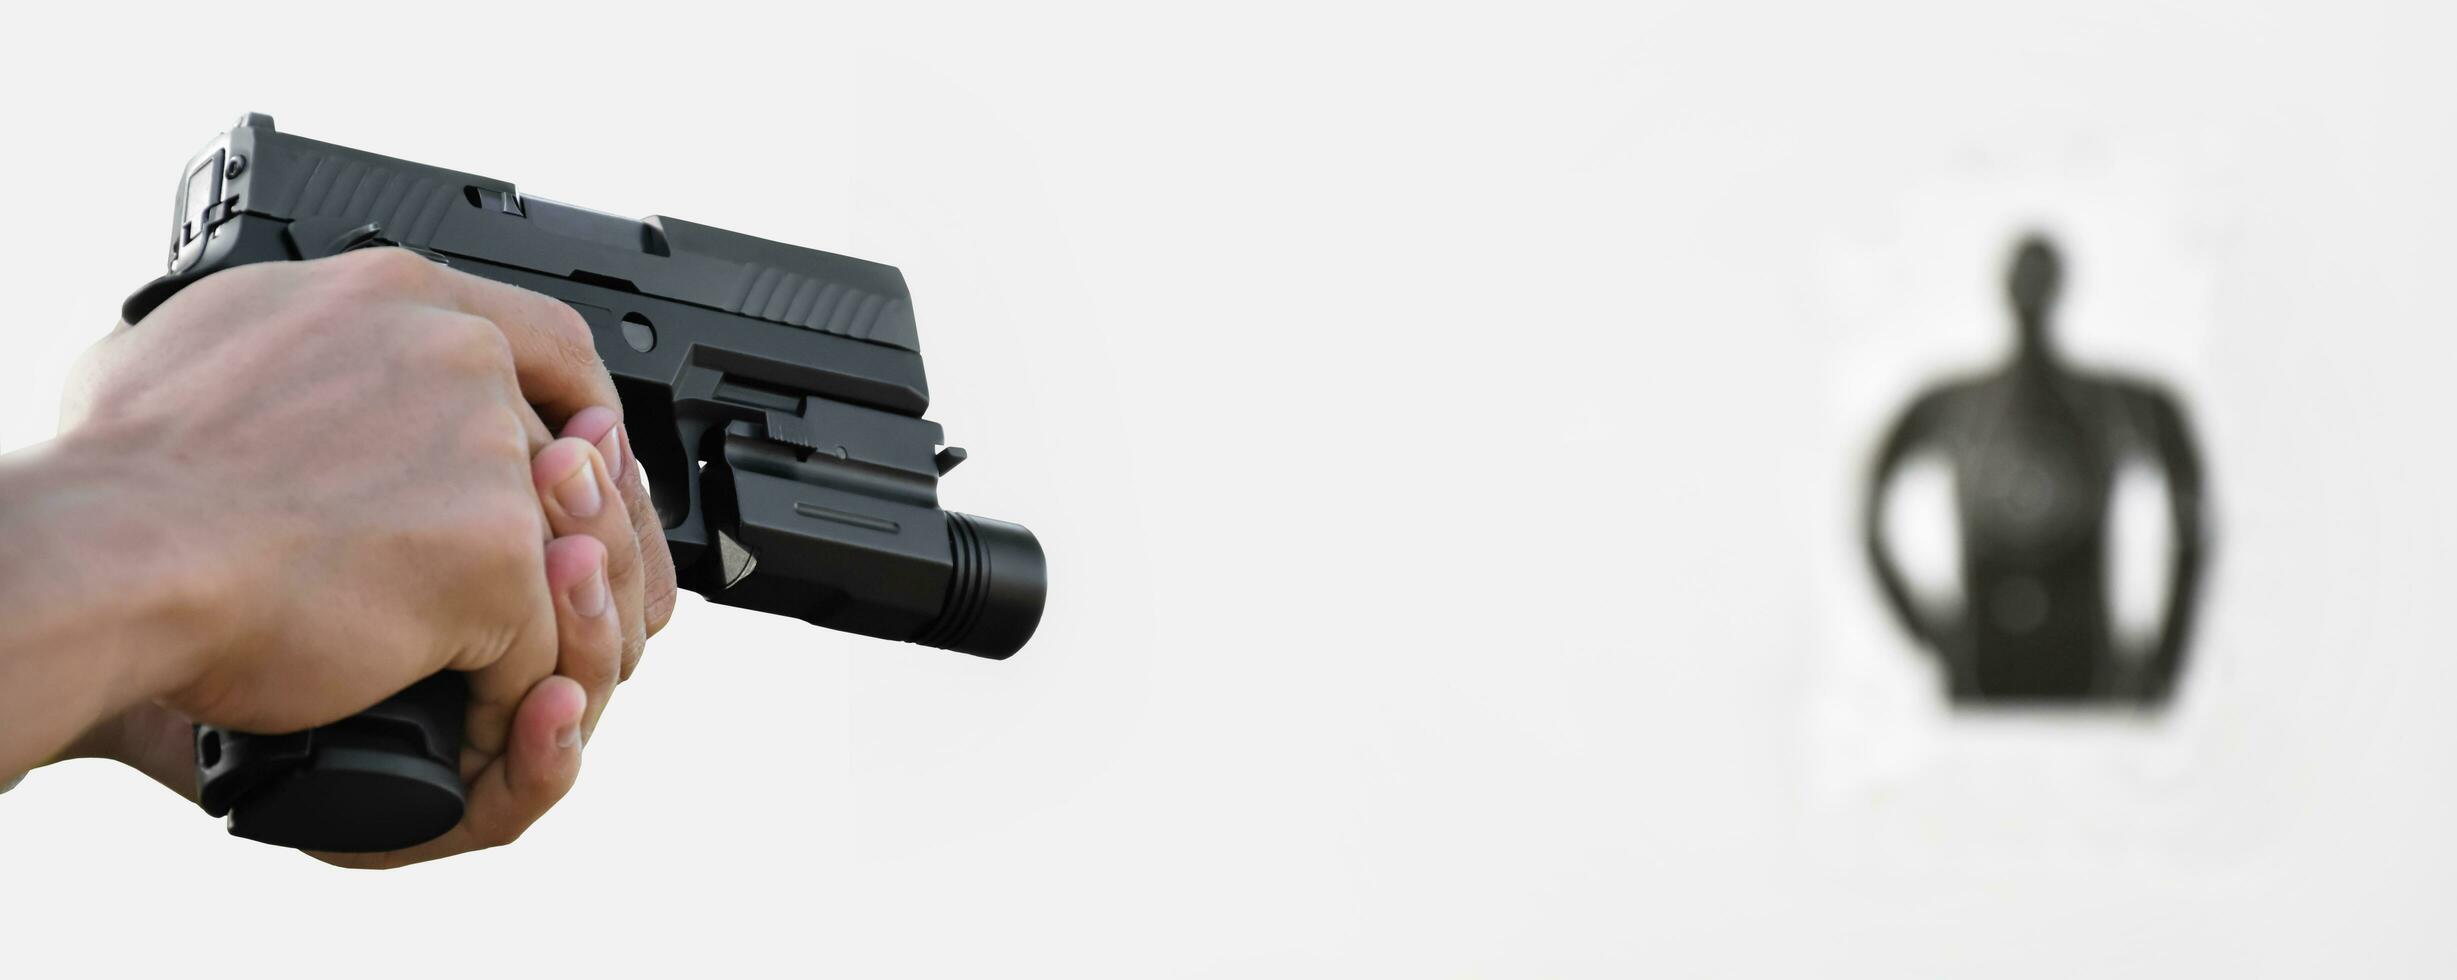 isolerat händer innehav 9mm pistol pistol siktar till skytte mål, rekreations aktivitet och pistol skytte Träning begrepp. foto